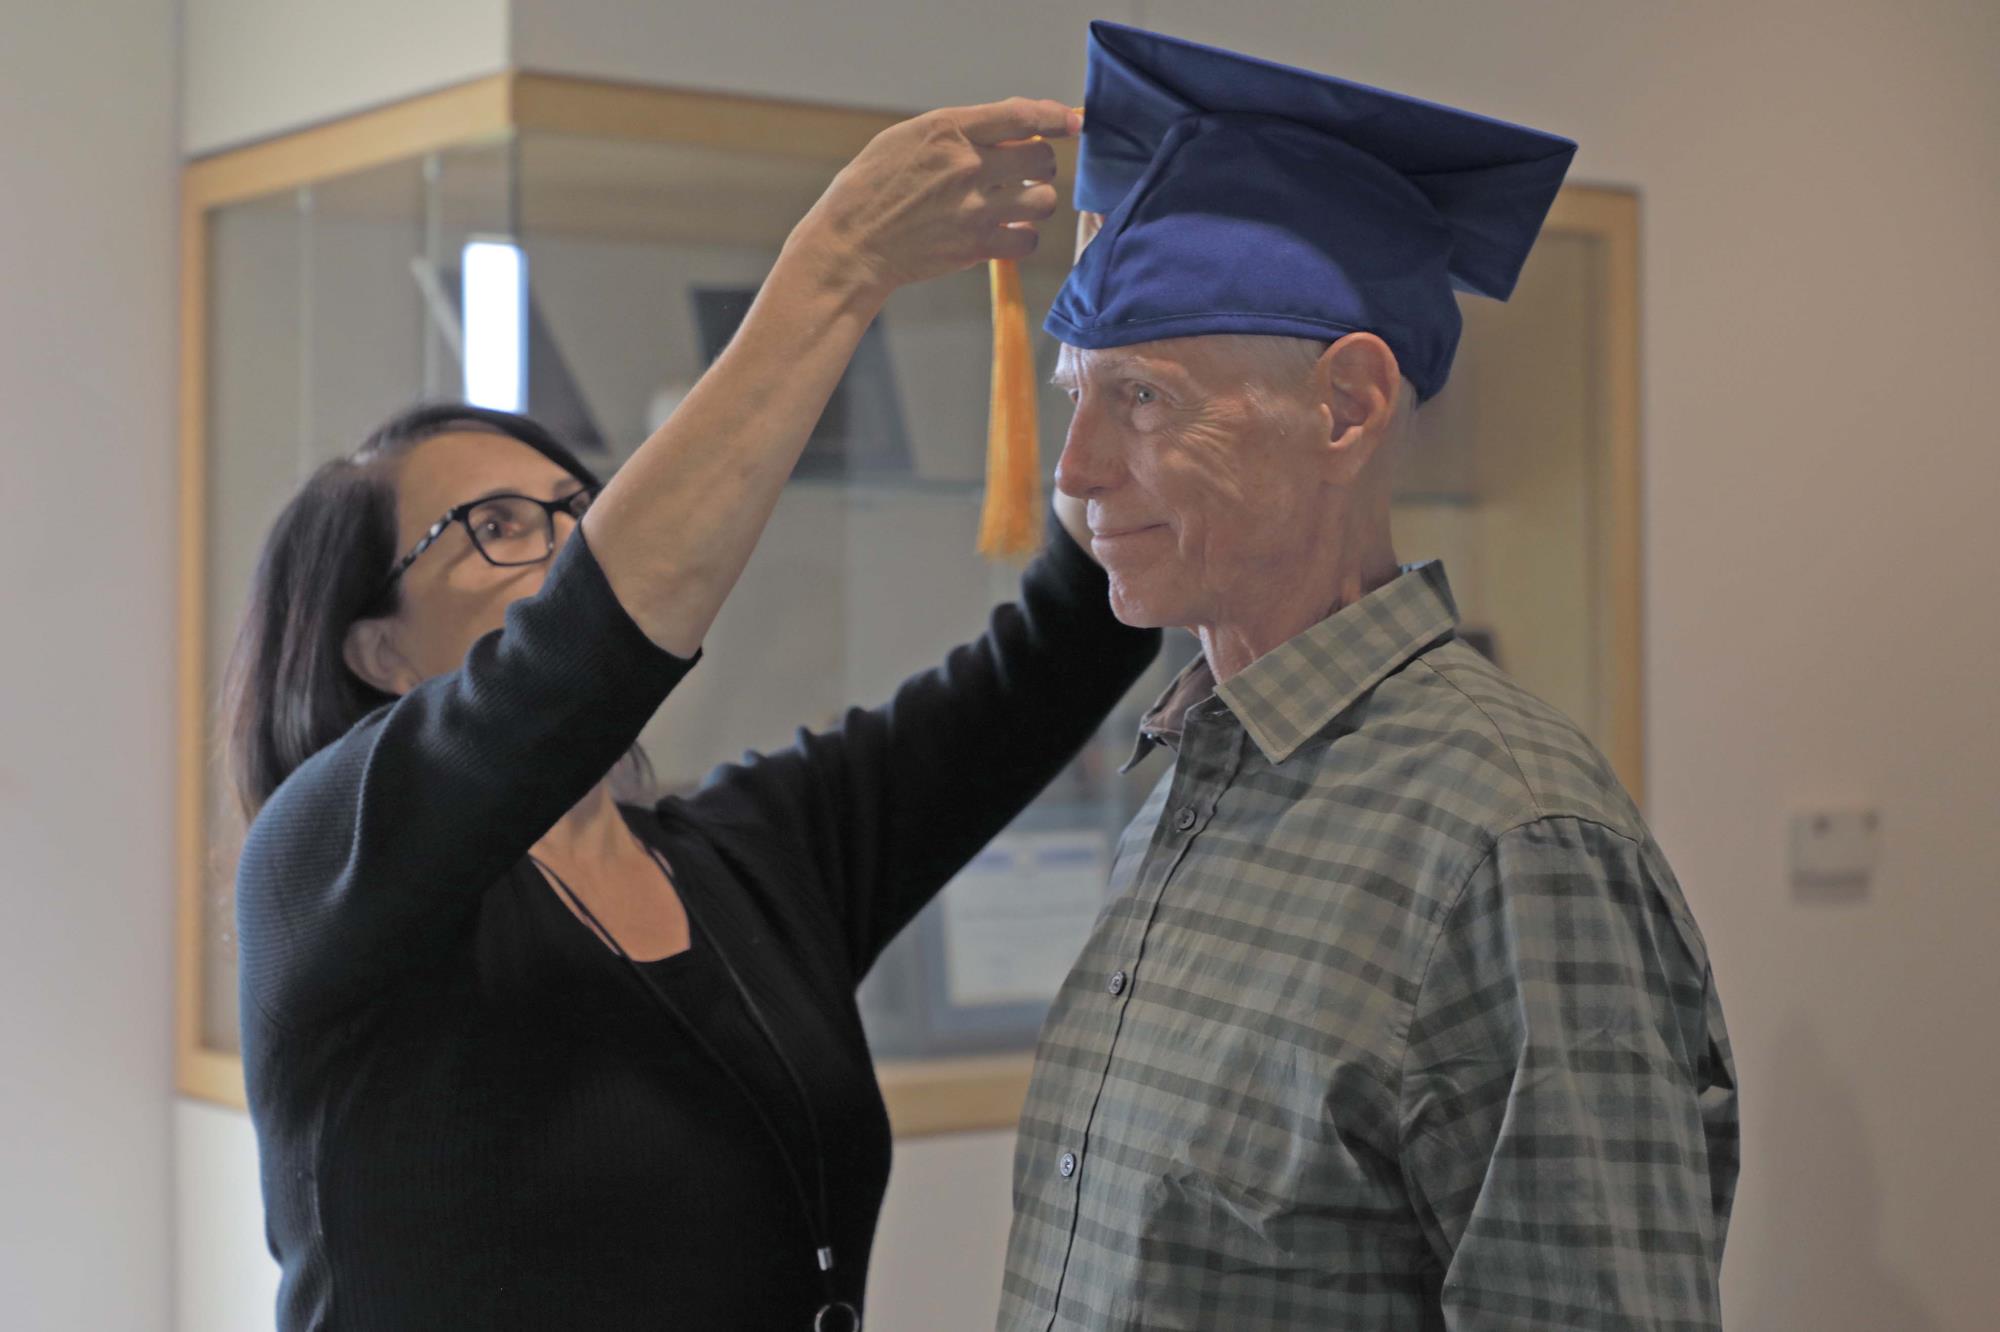 Veteran George Flowers gets help with graduation cap